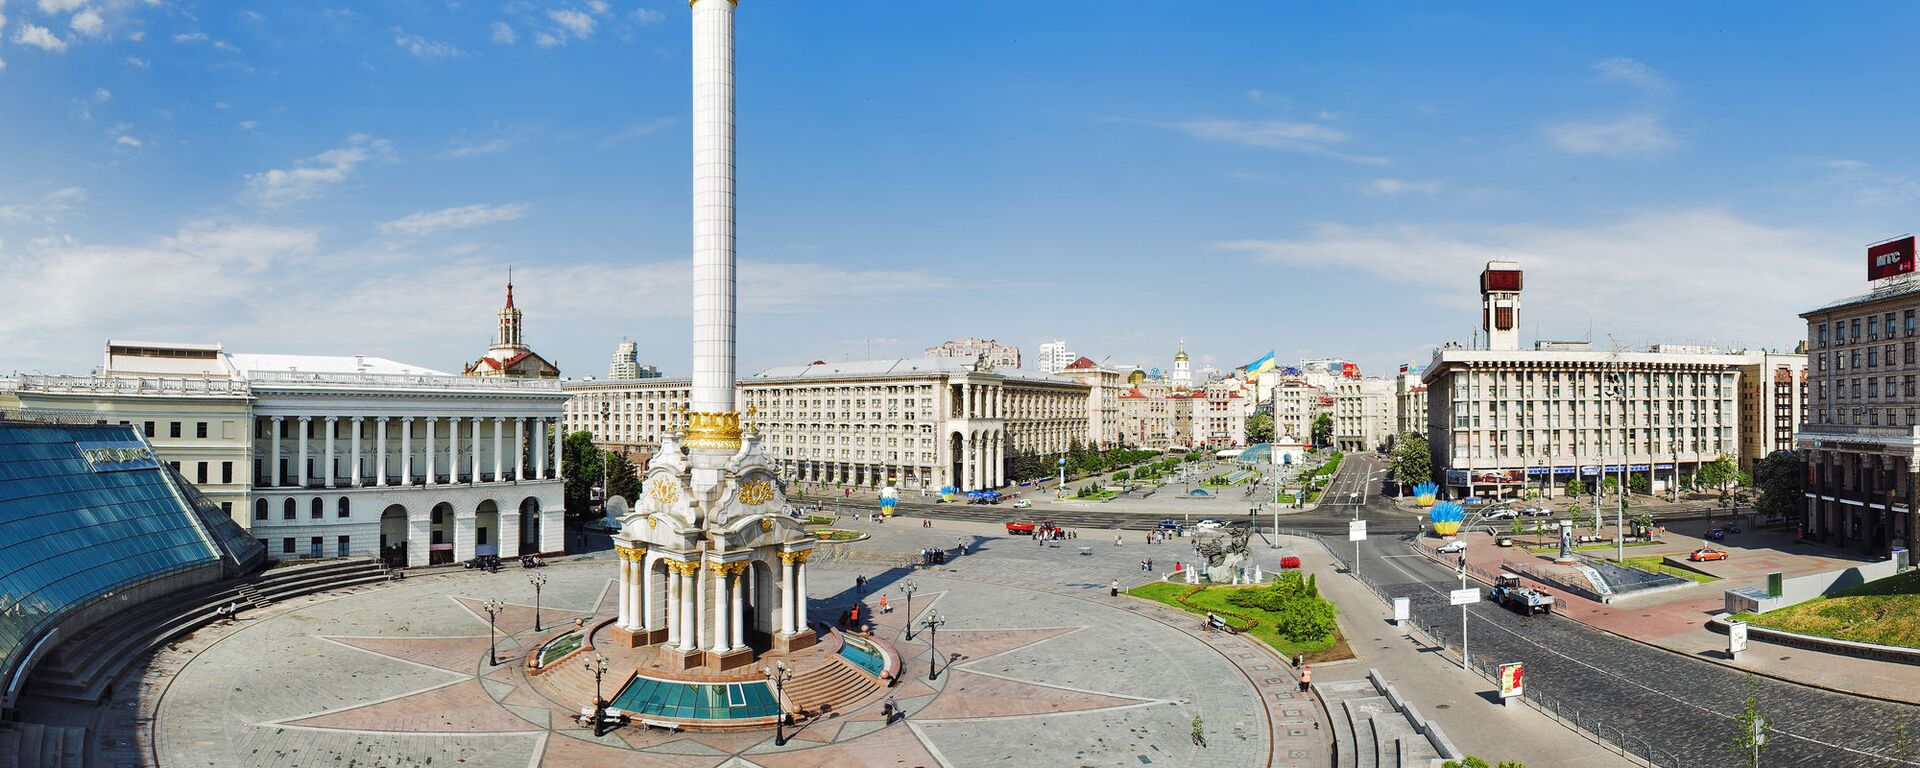 Площадь Независимости в Киеве, архивное фото - Sputnik Lietuva, 1920, 01.04.2021